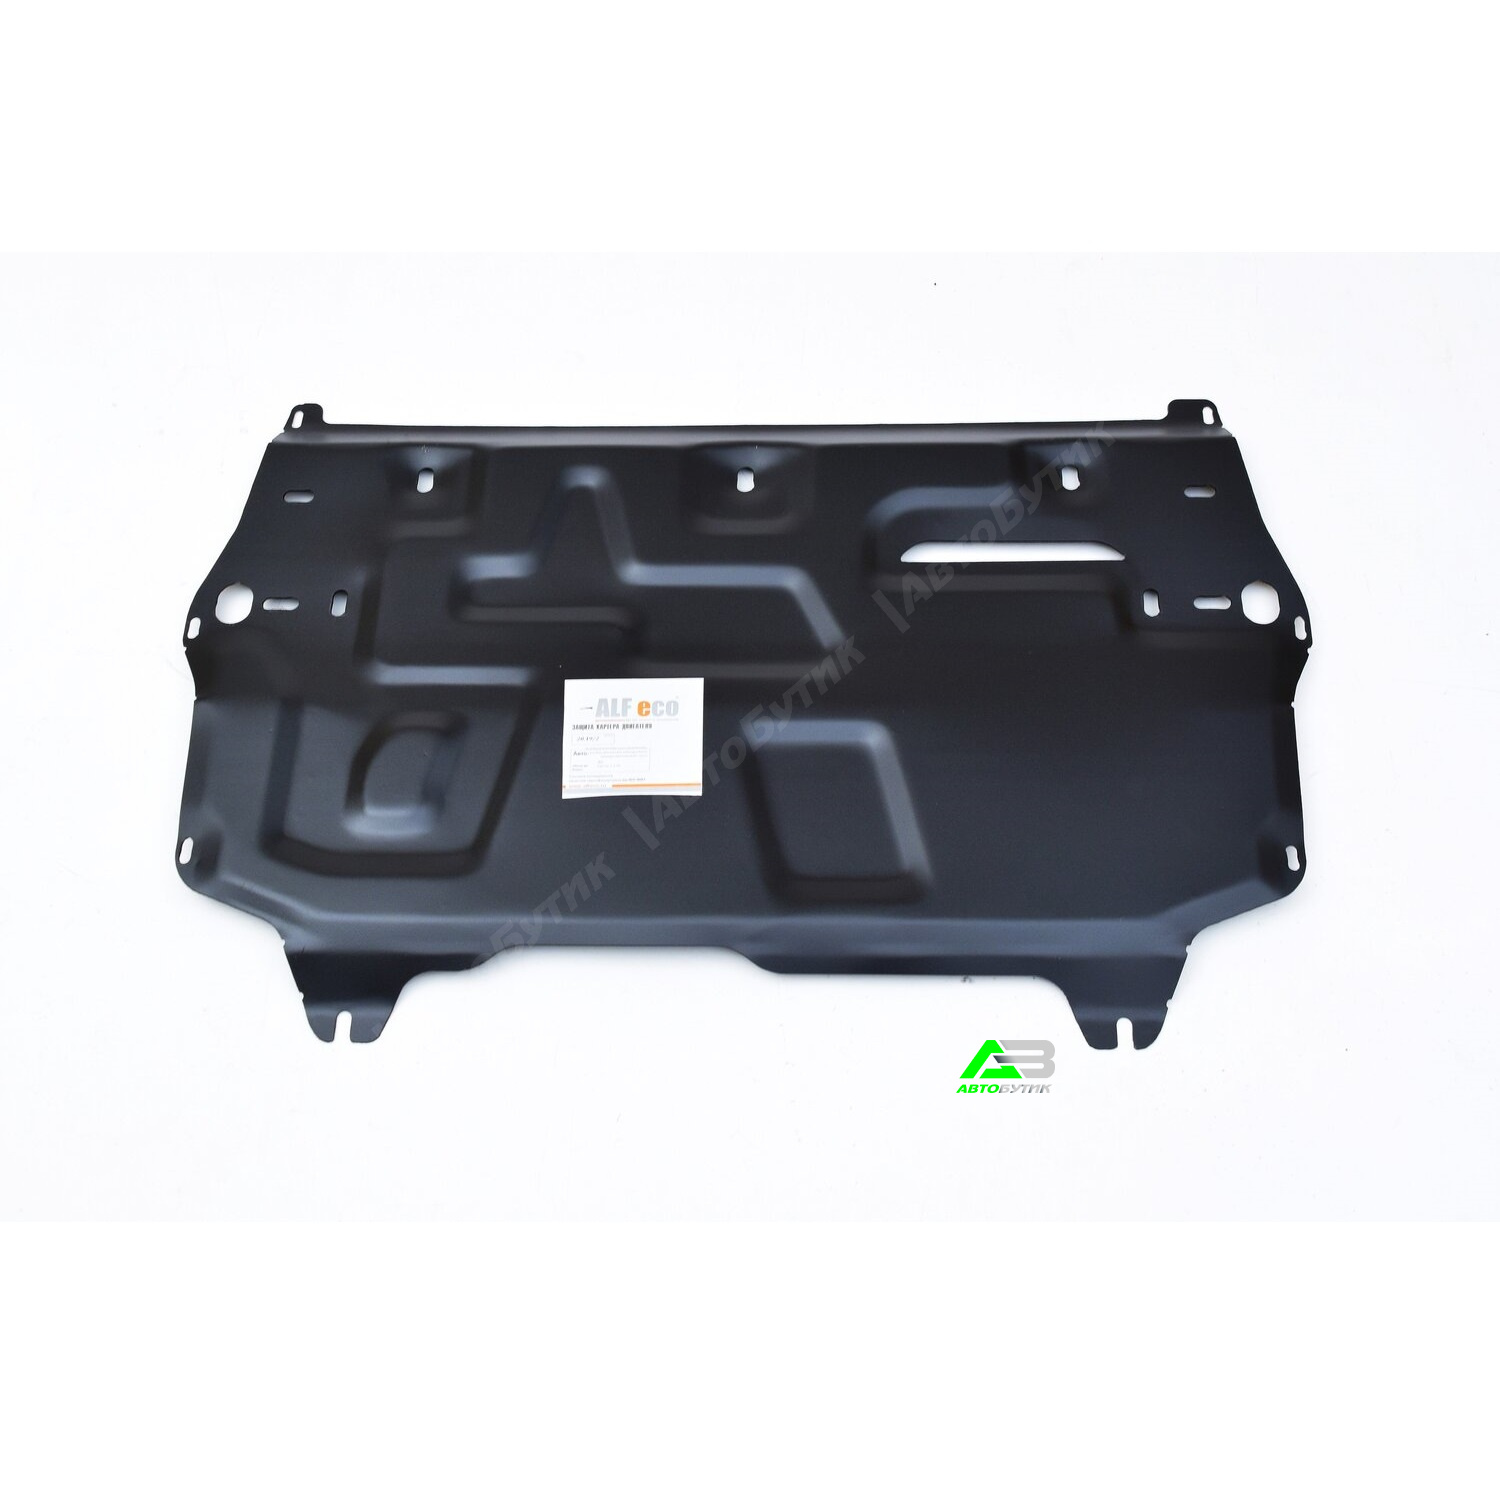 Защита картера двигателя и КПП ALFeco для SEAT Cordoba, Сталь 1,5 мм, арт. ALF20192st